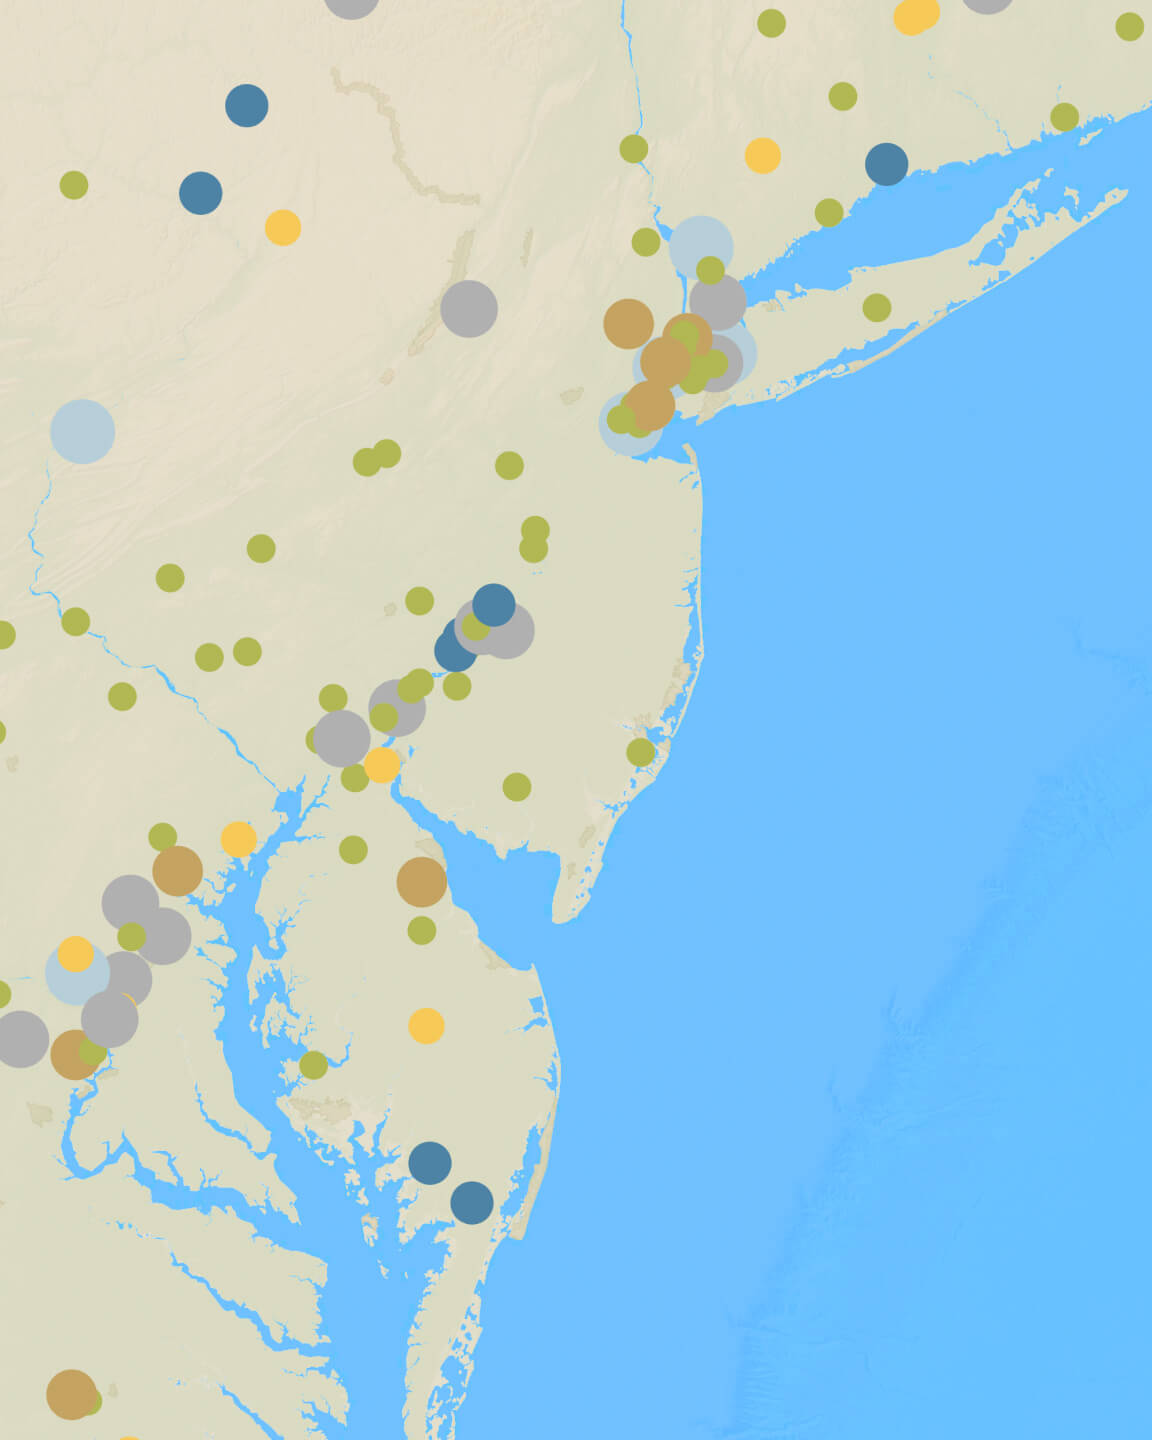 خريطة تصور جودة الهواء على طول الساحل الشرقي للولايات المتحدة مع تمثيلات دائرية للكثافة